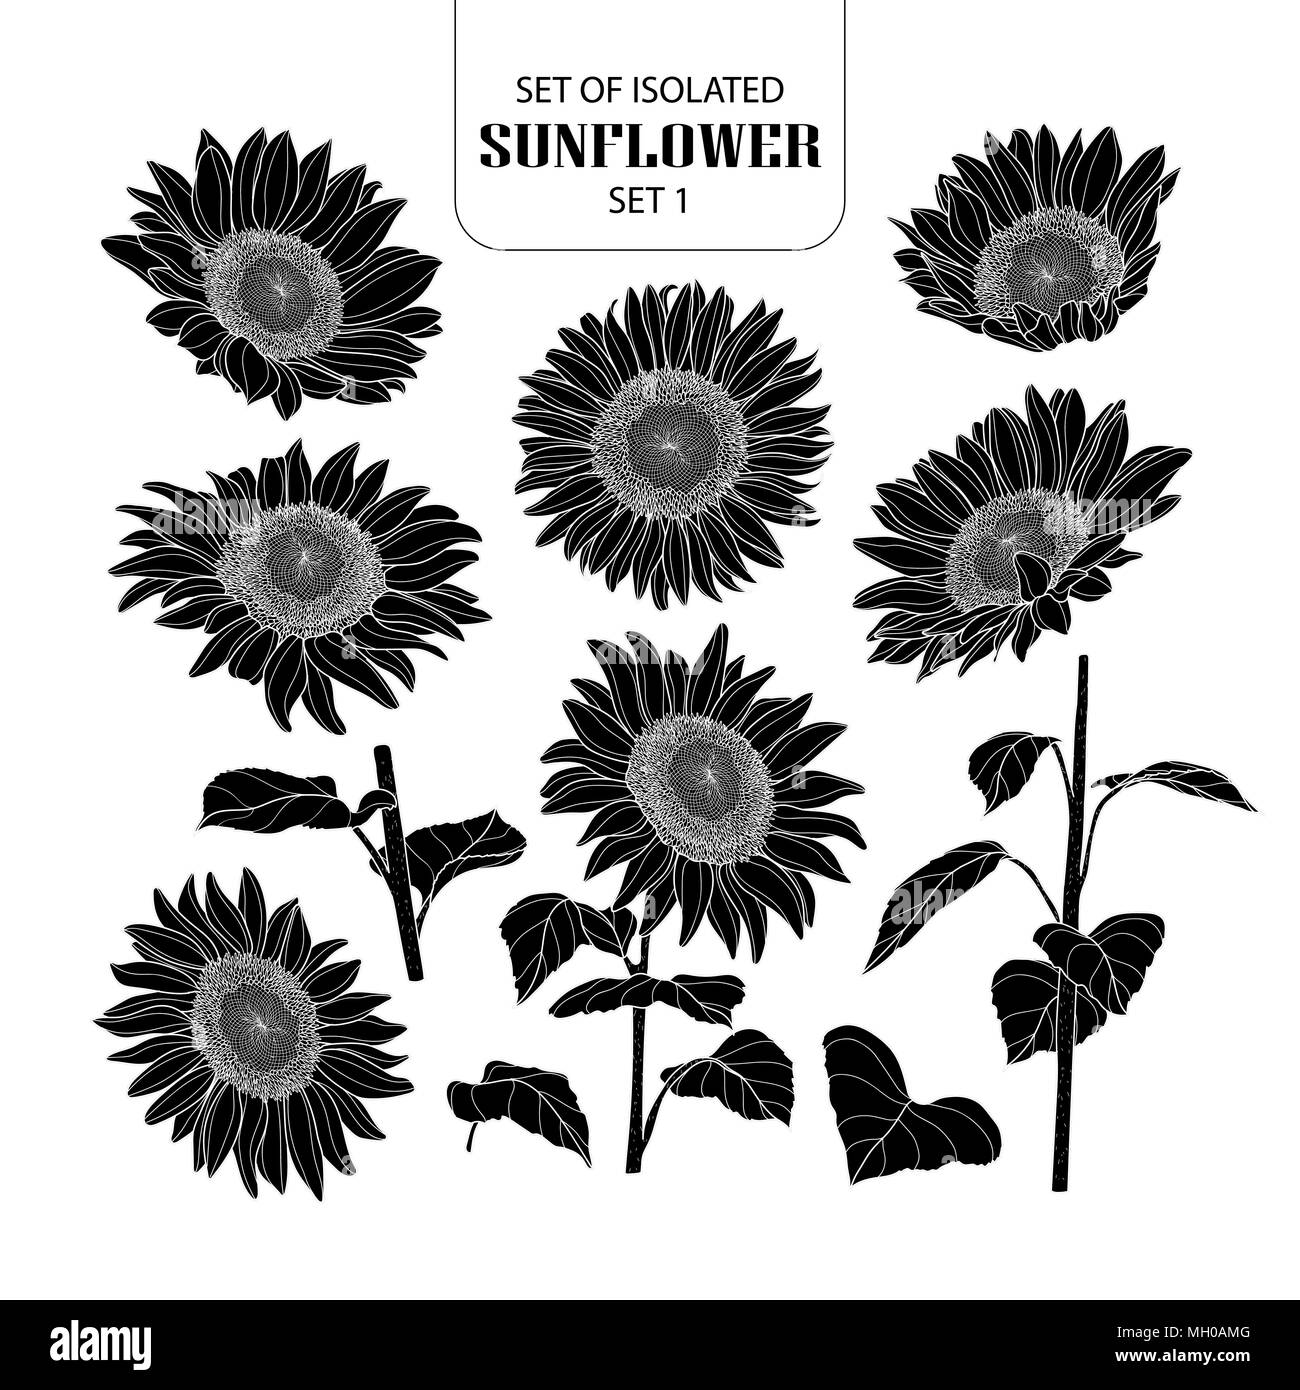 Eingestellt von isolierten silhouette Sunflower 1 1. Süße Hand gezeichnet Vector Illustration in weißer Umriss und schwarzen Flugzeug auf weißem Hintergrund. Stock Vektor